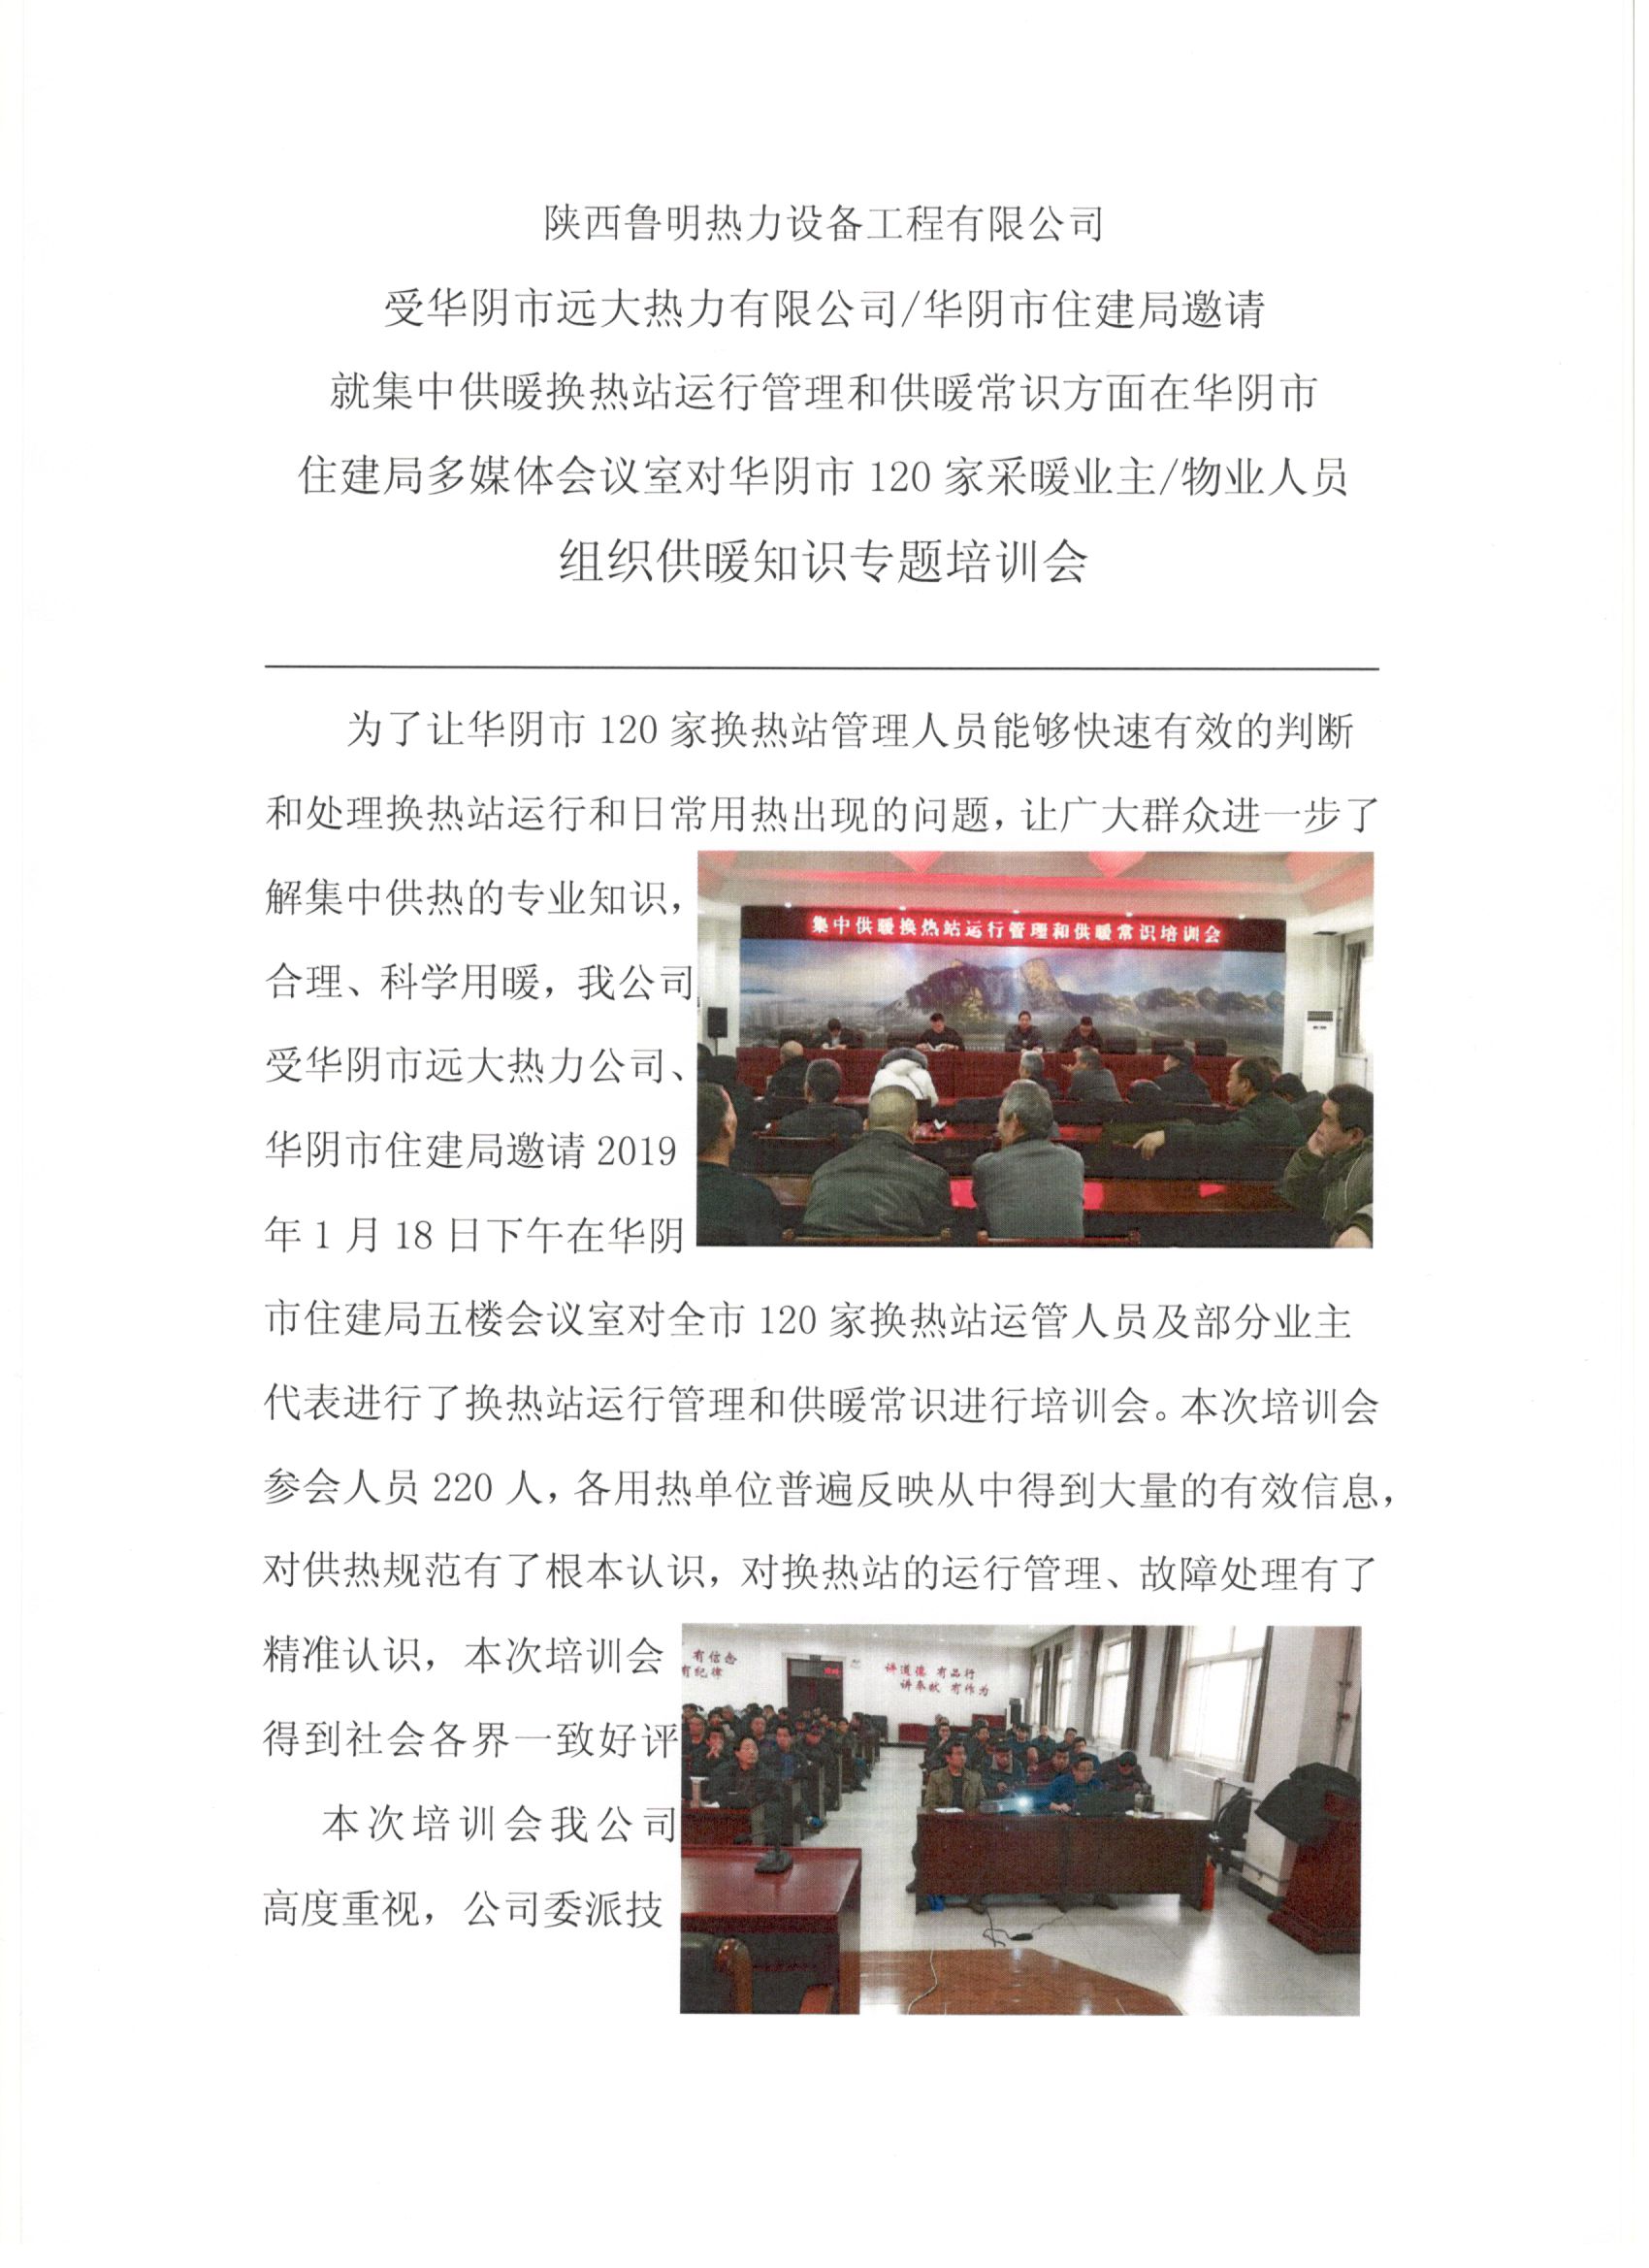 受邀华阴市远大热力有限公司组织供暖知识专题培训会(图1)